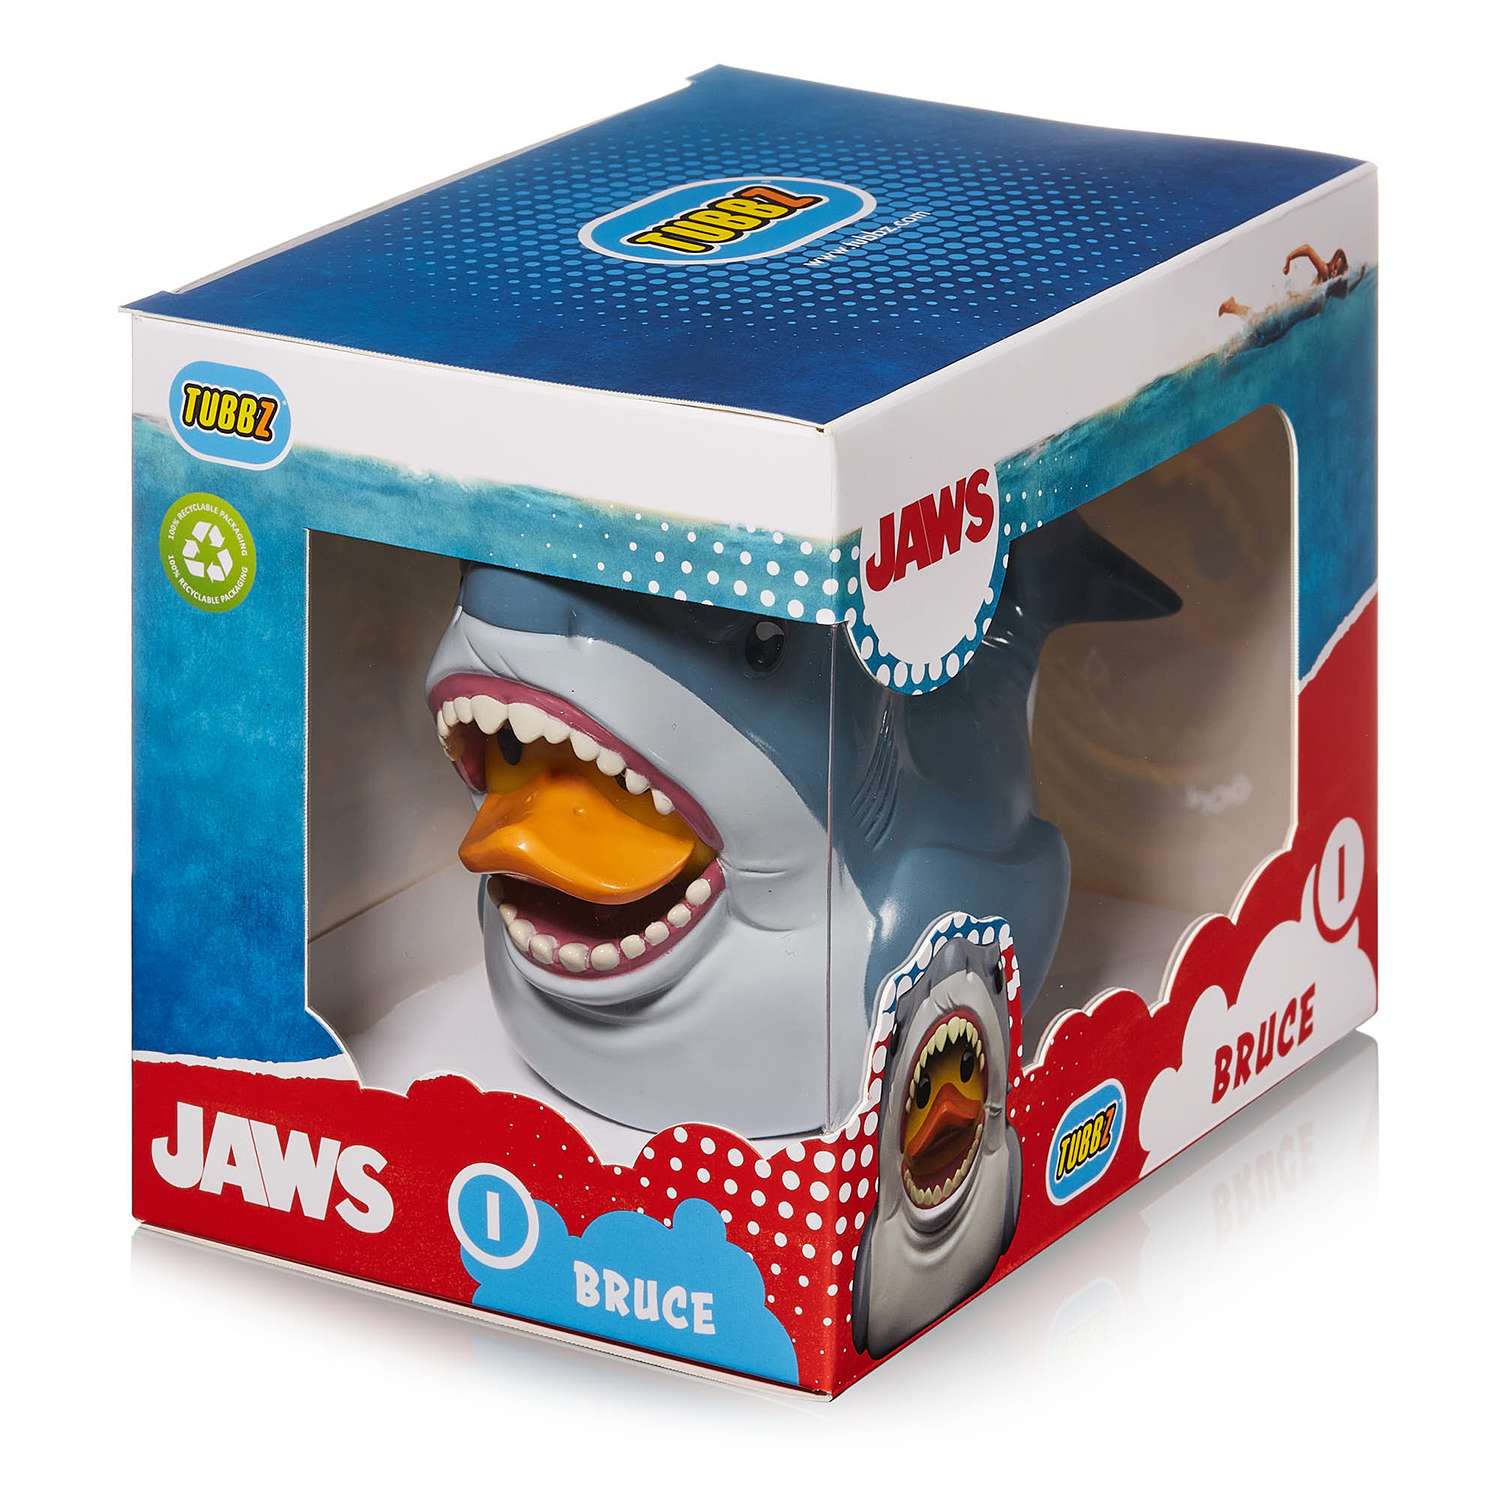 Фигурка JAWS Утка Tubbz акула Брюс из Челюсти Boxed Edition без ванны - фото 2